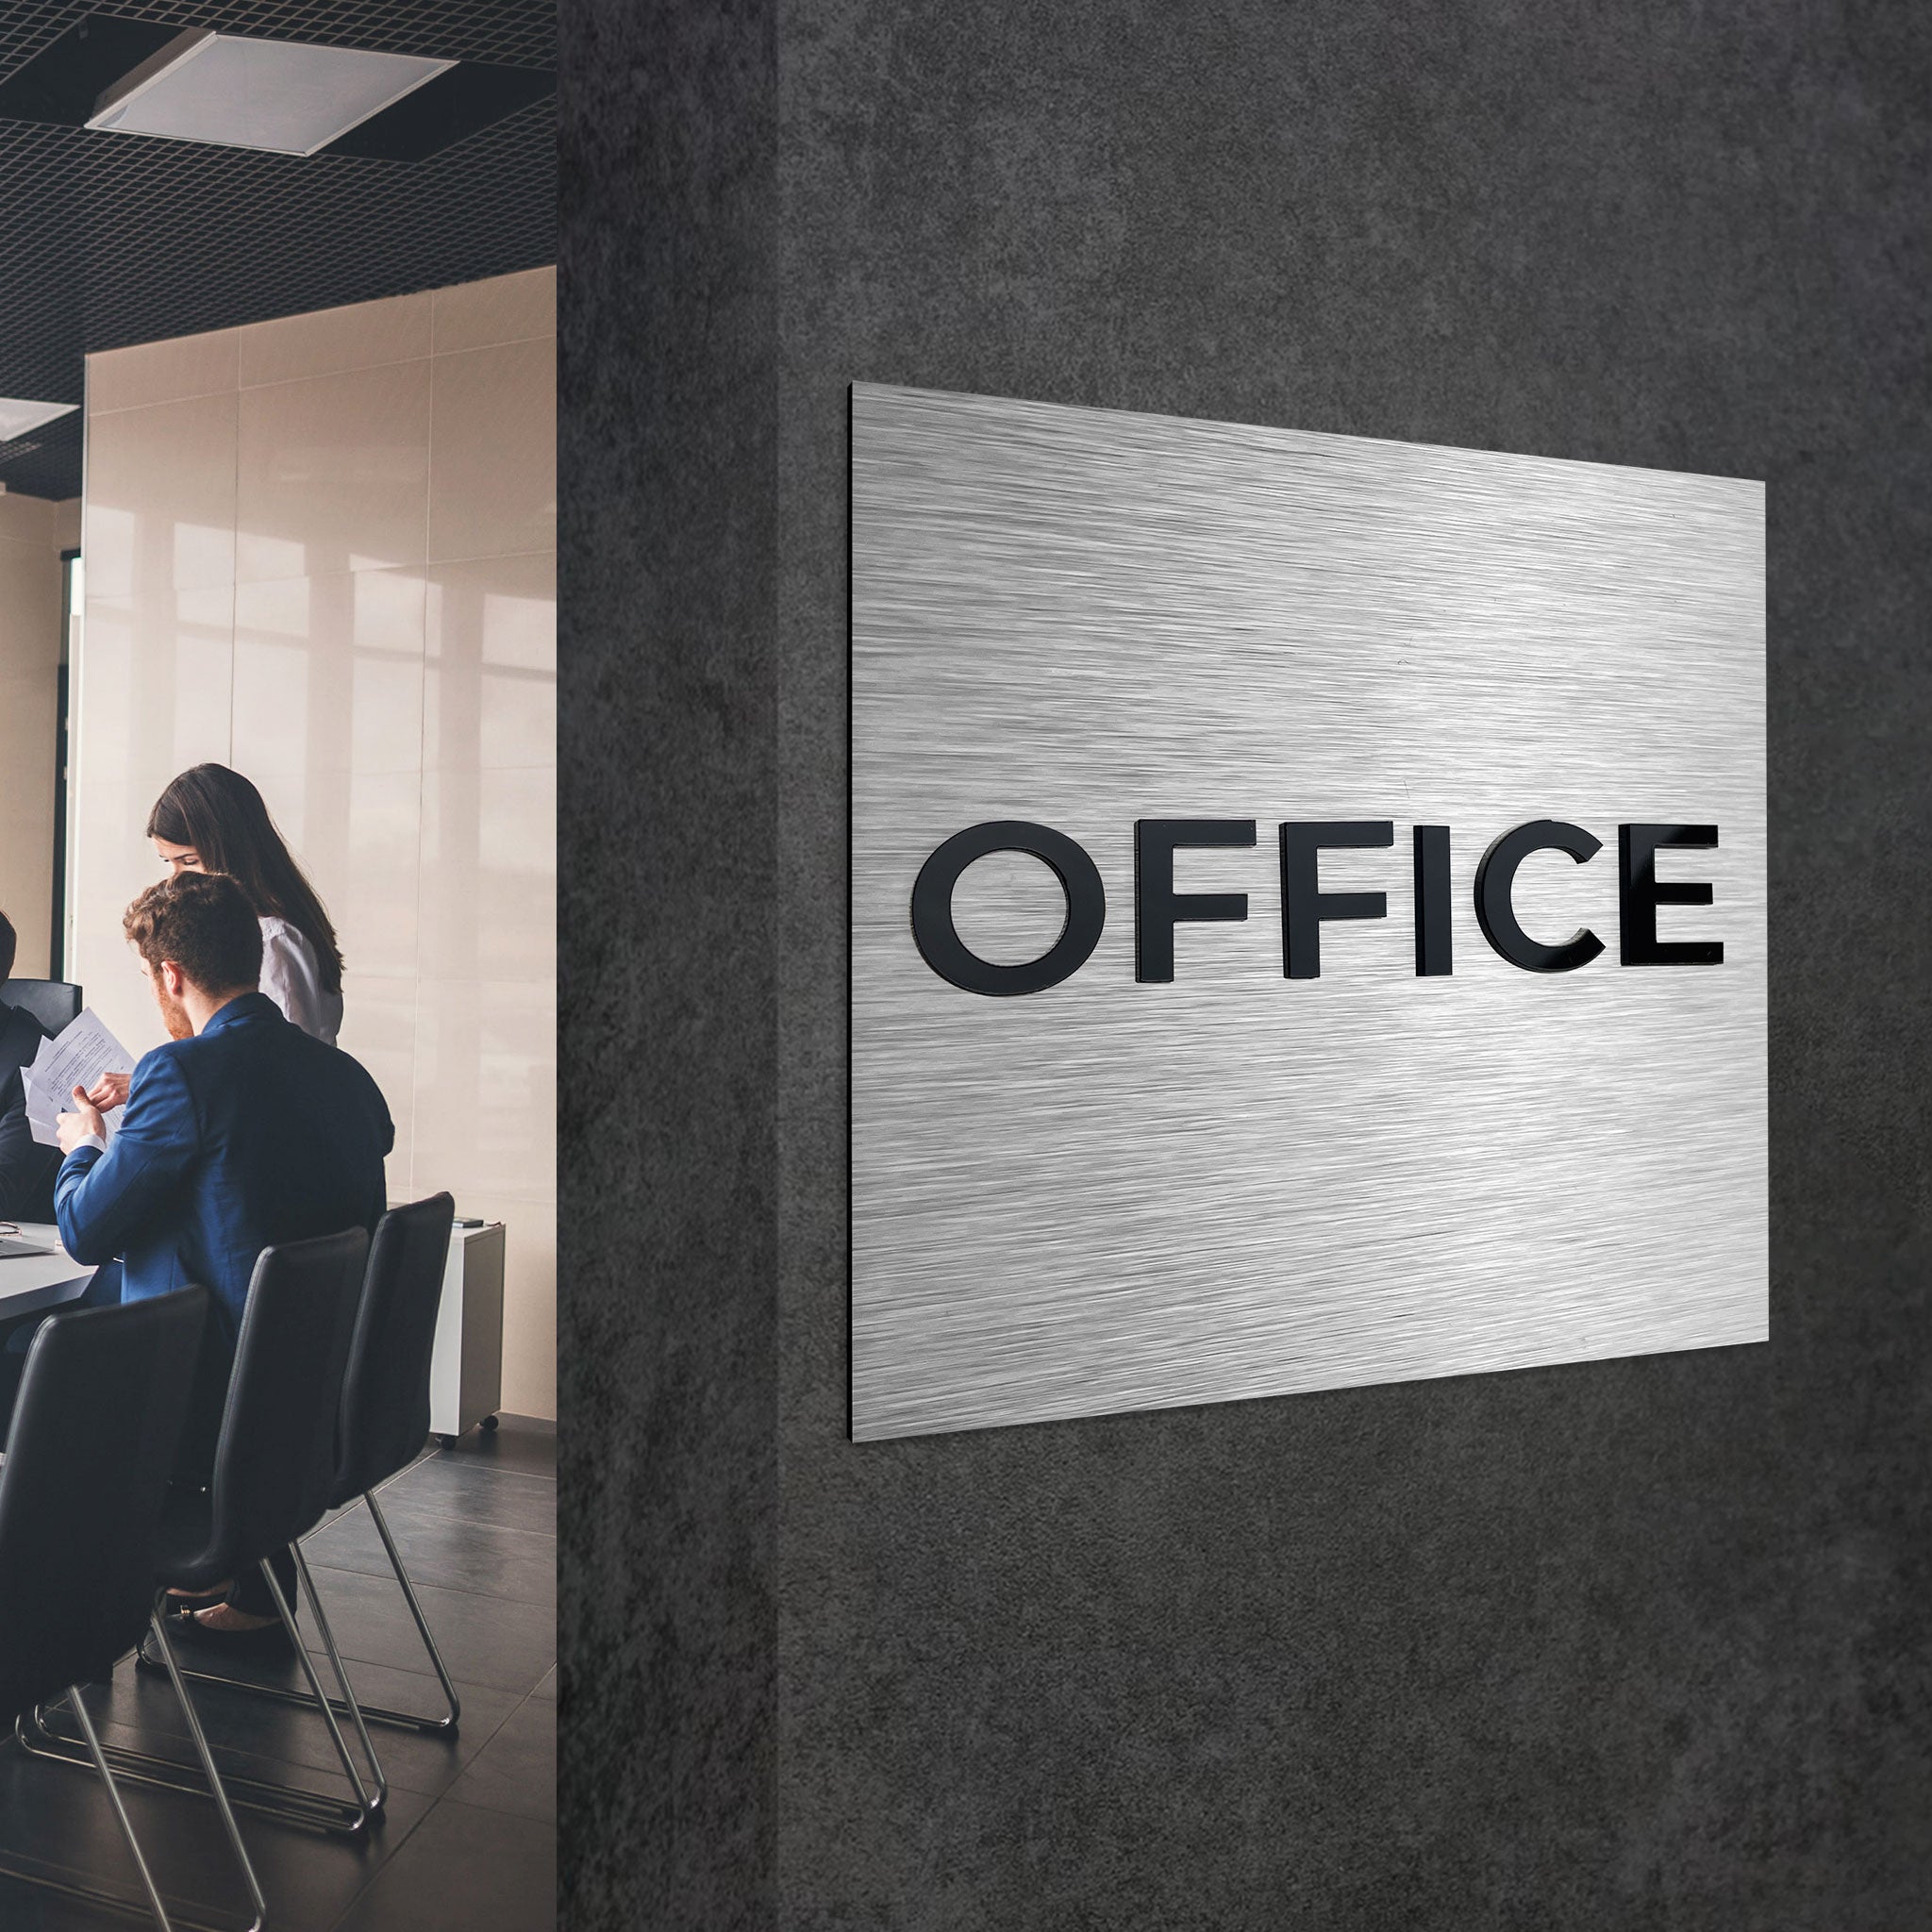 OFFICE SIGN - ALUMADESIGNCO Door Signs - Custom Door Signs For Business & Office